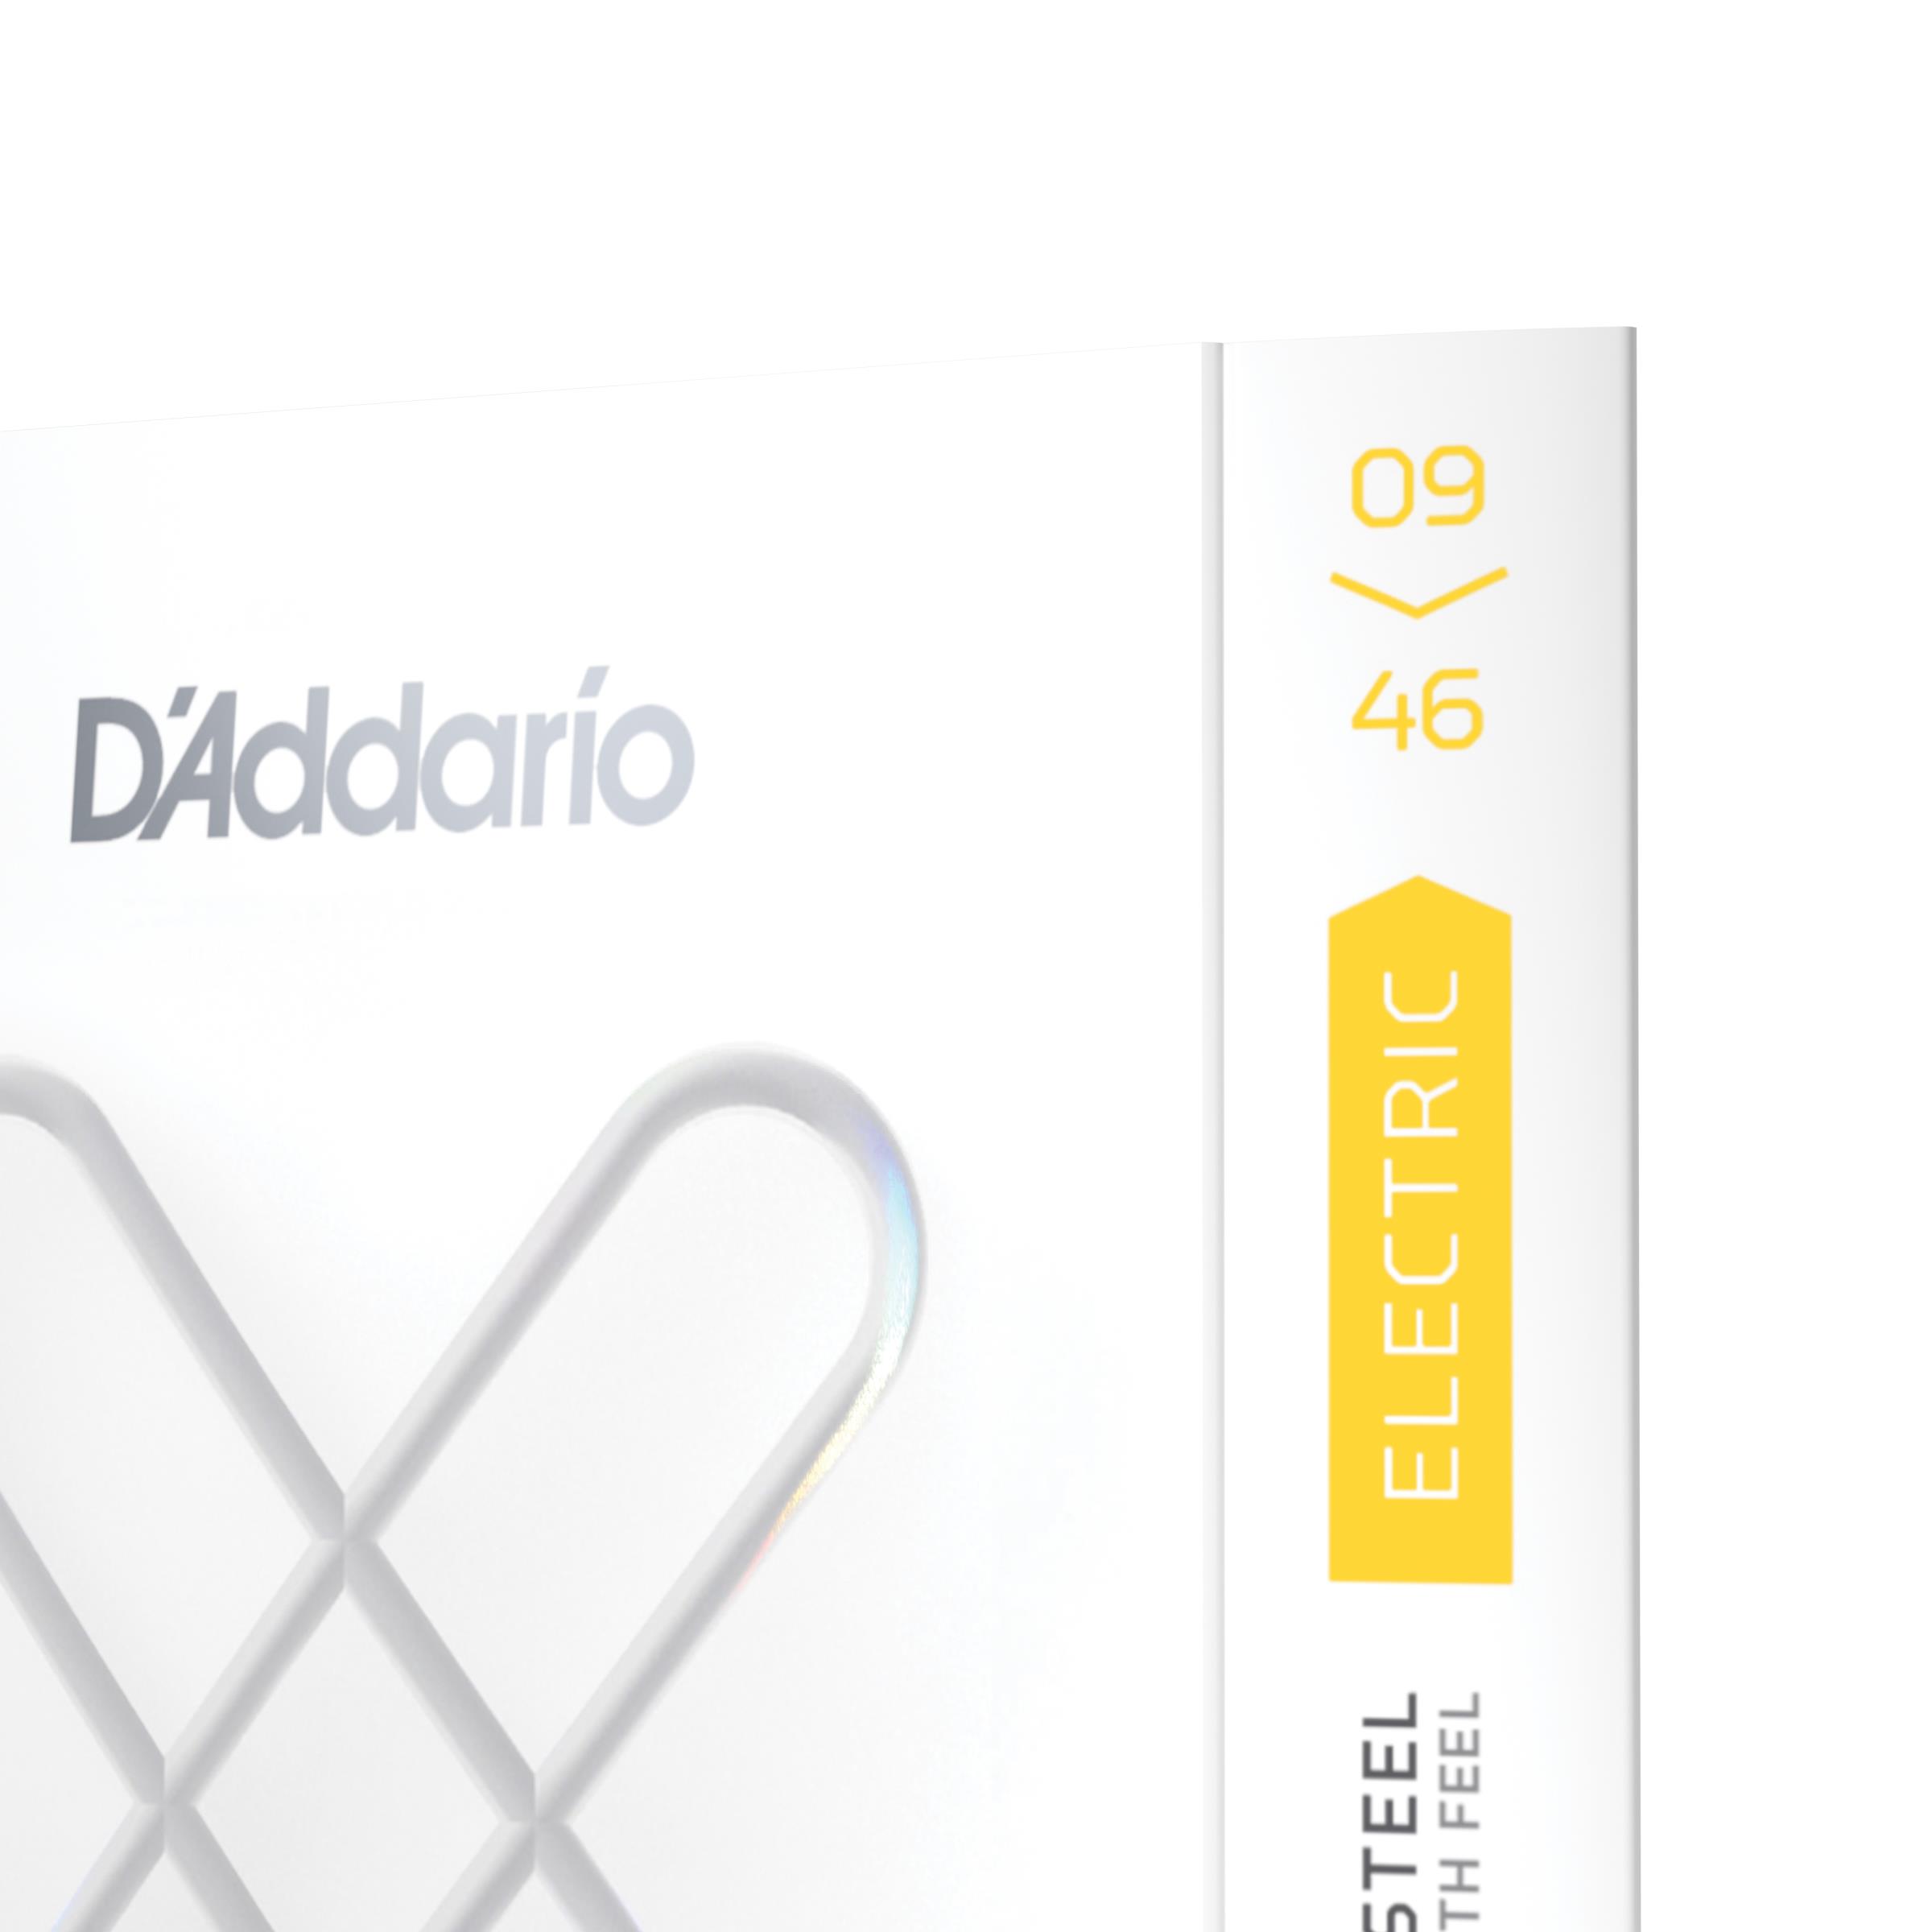 DAddario XSE0946, Super Light Top, Regular Bottom